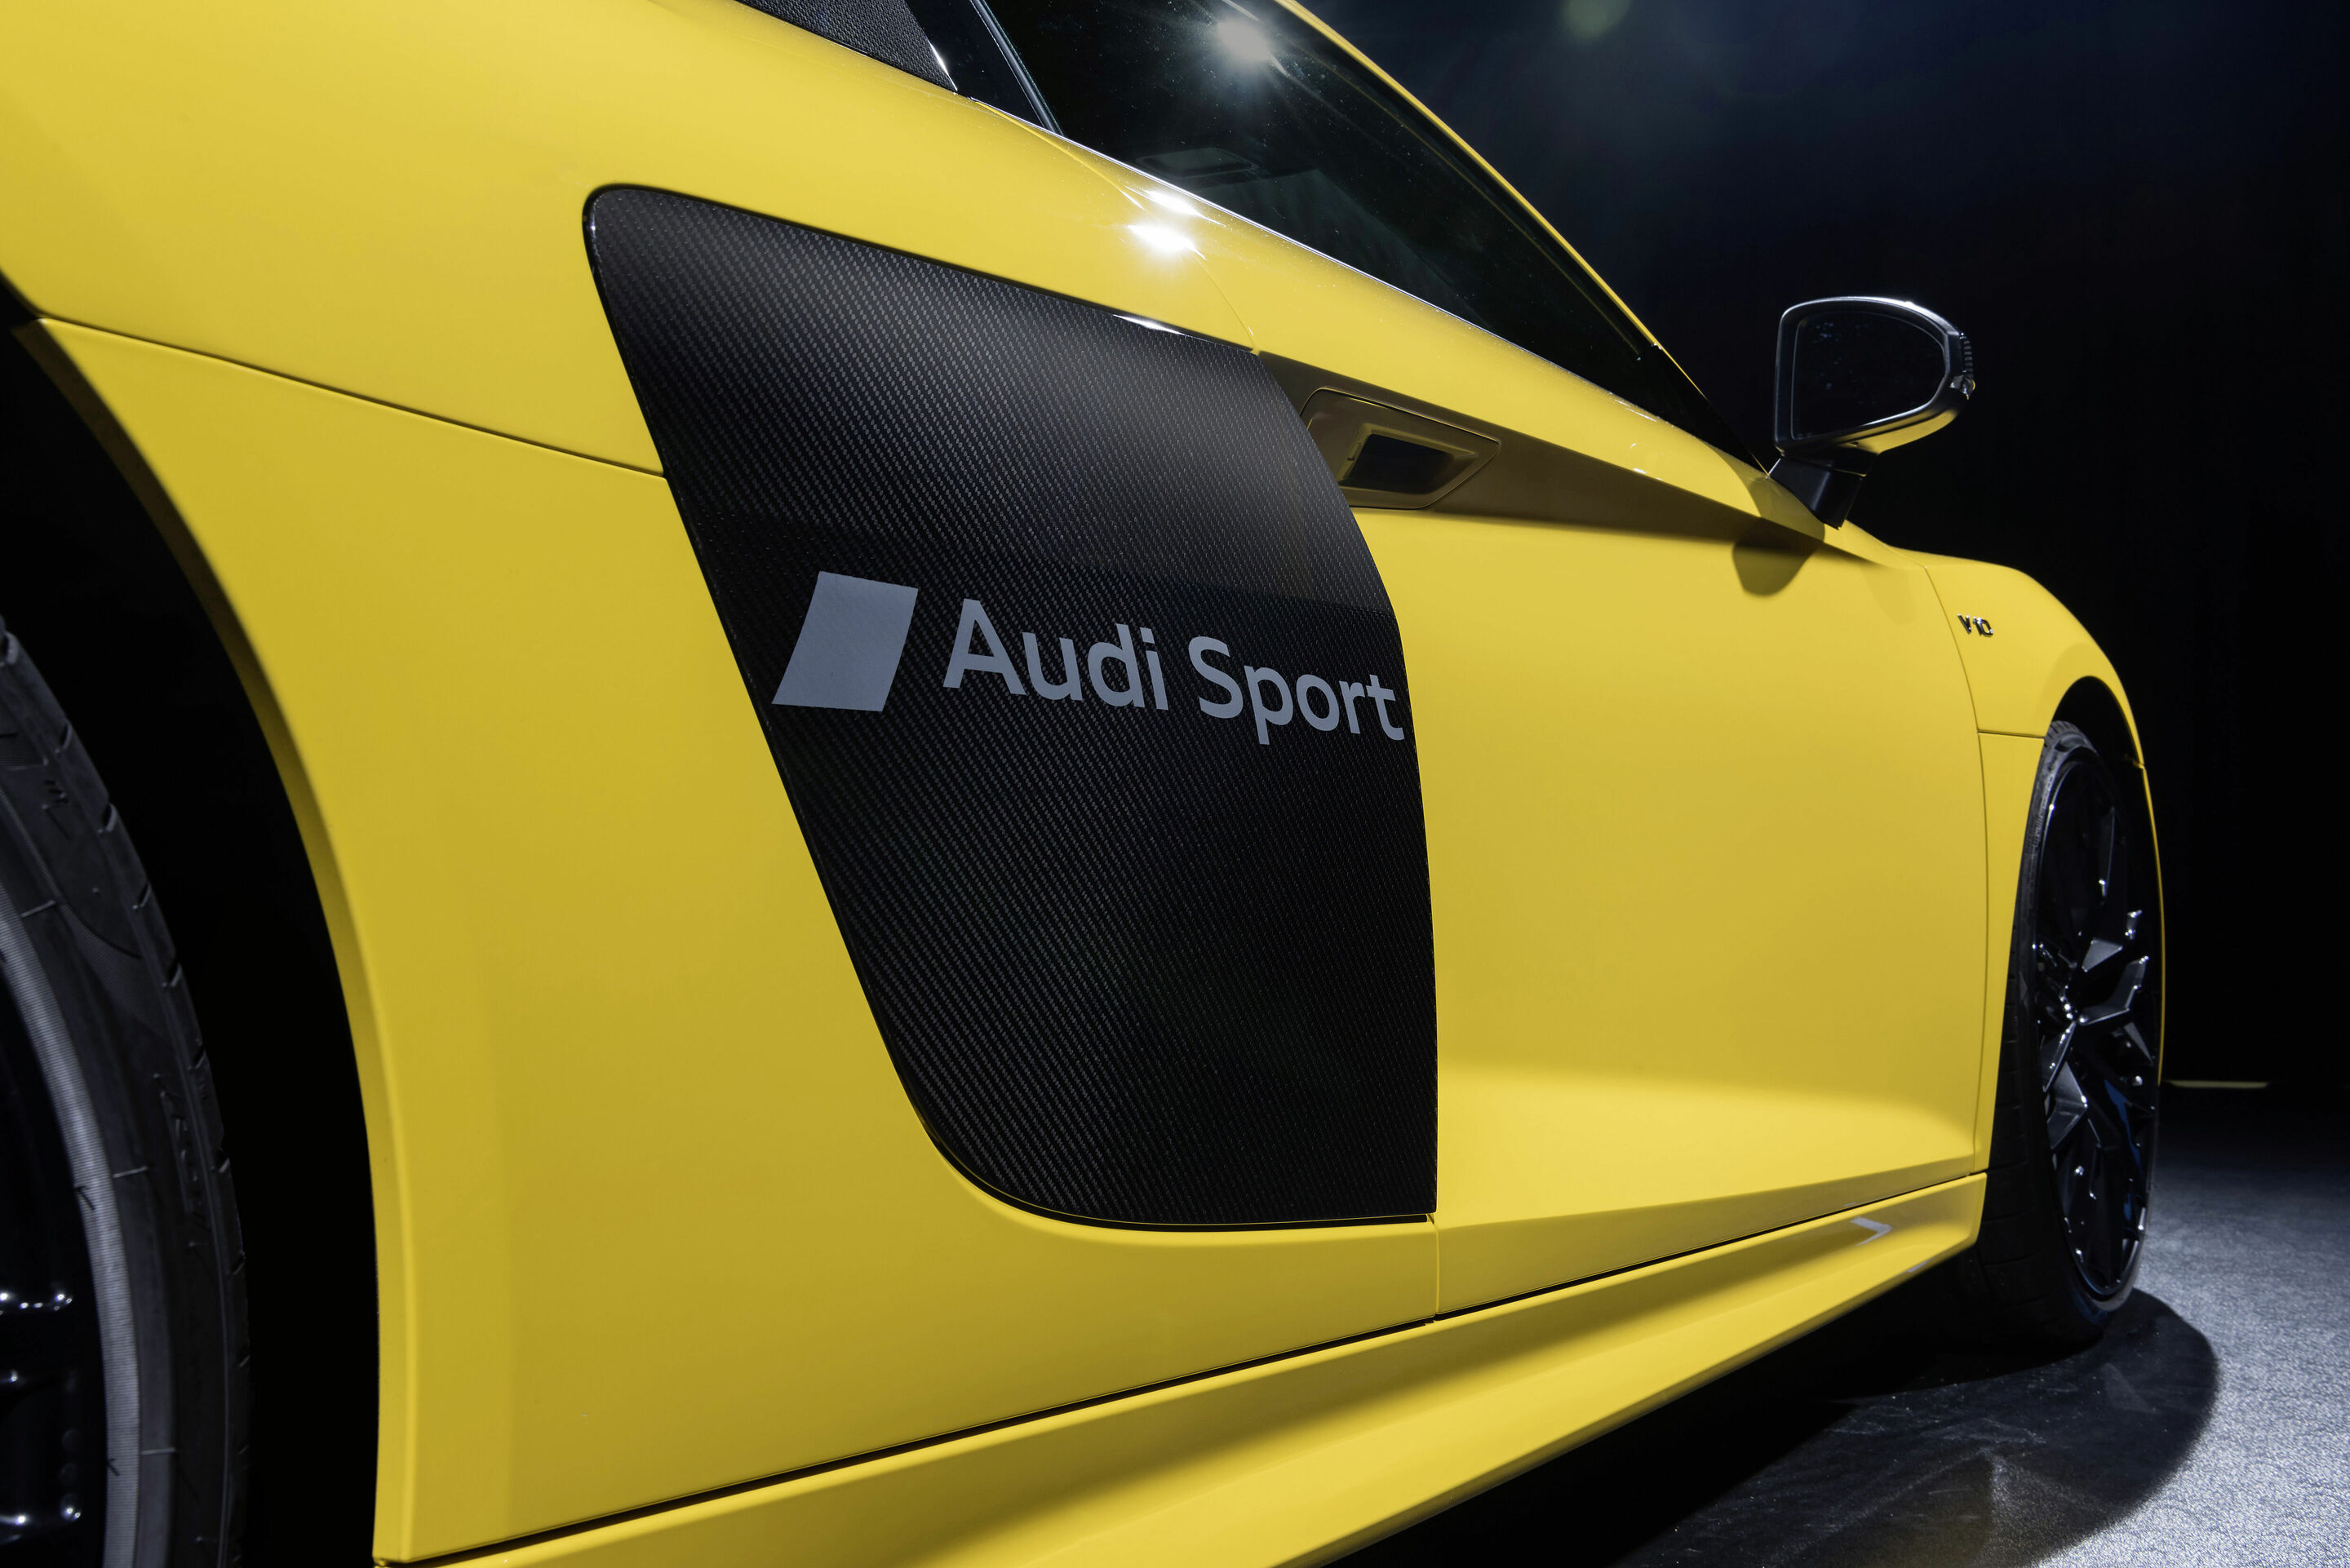 Audi etches symbols into car paint